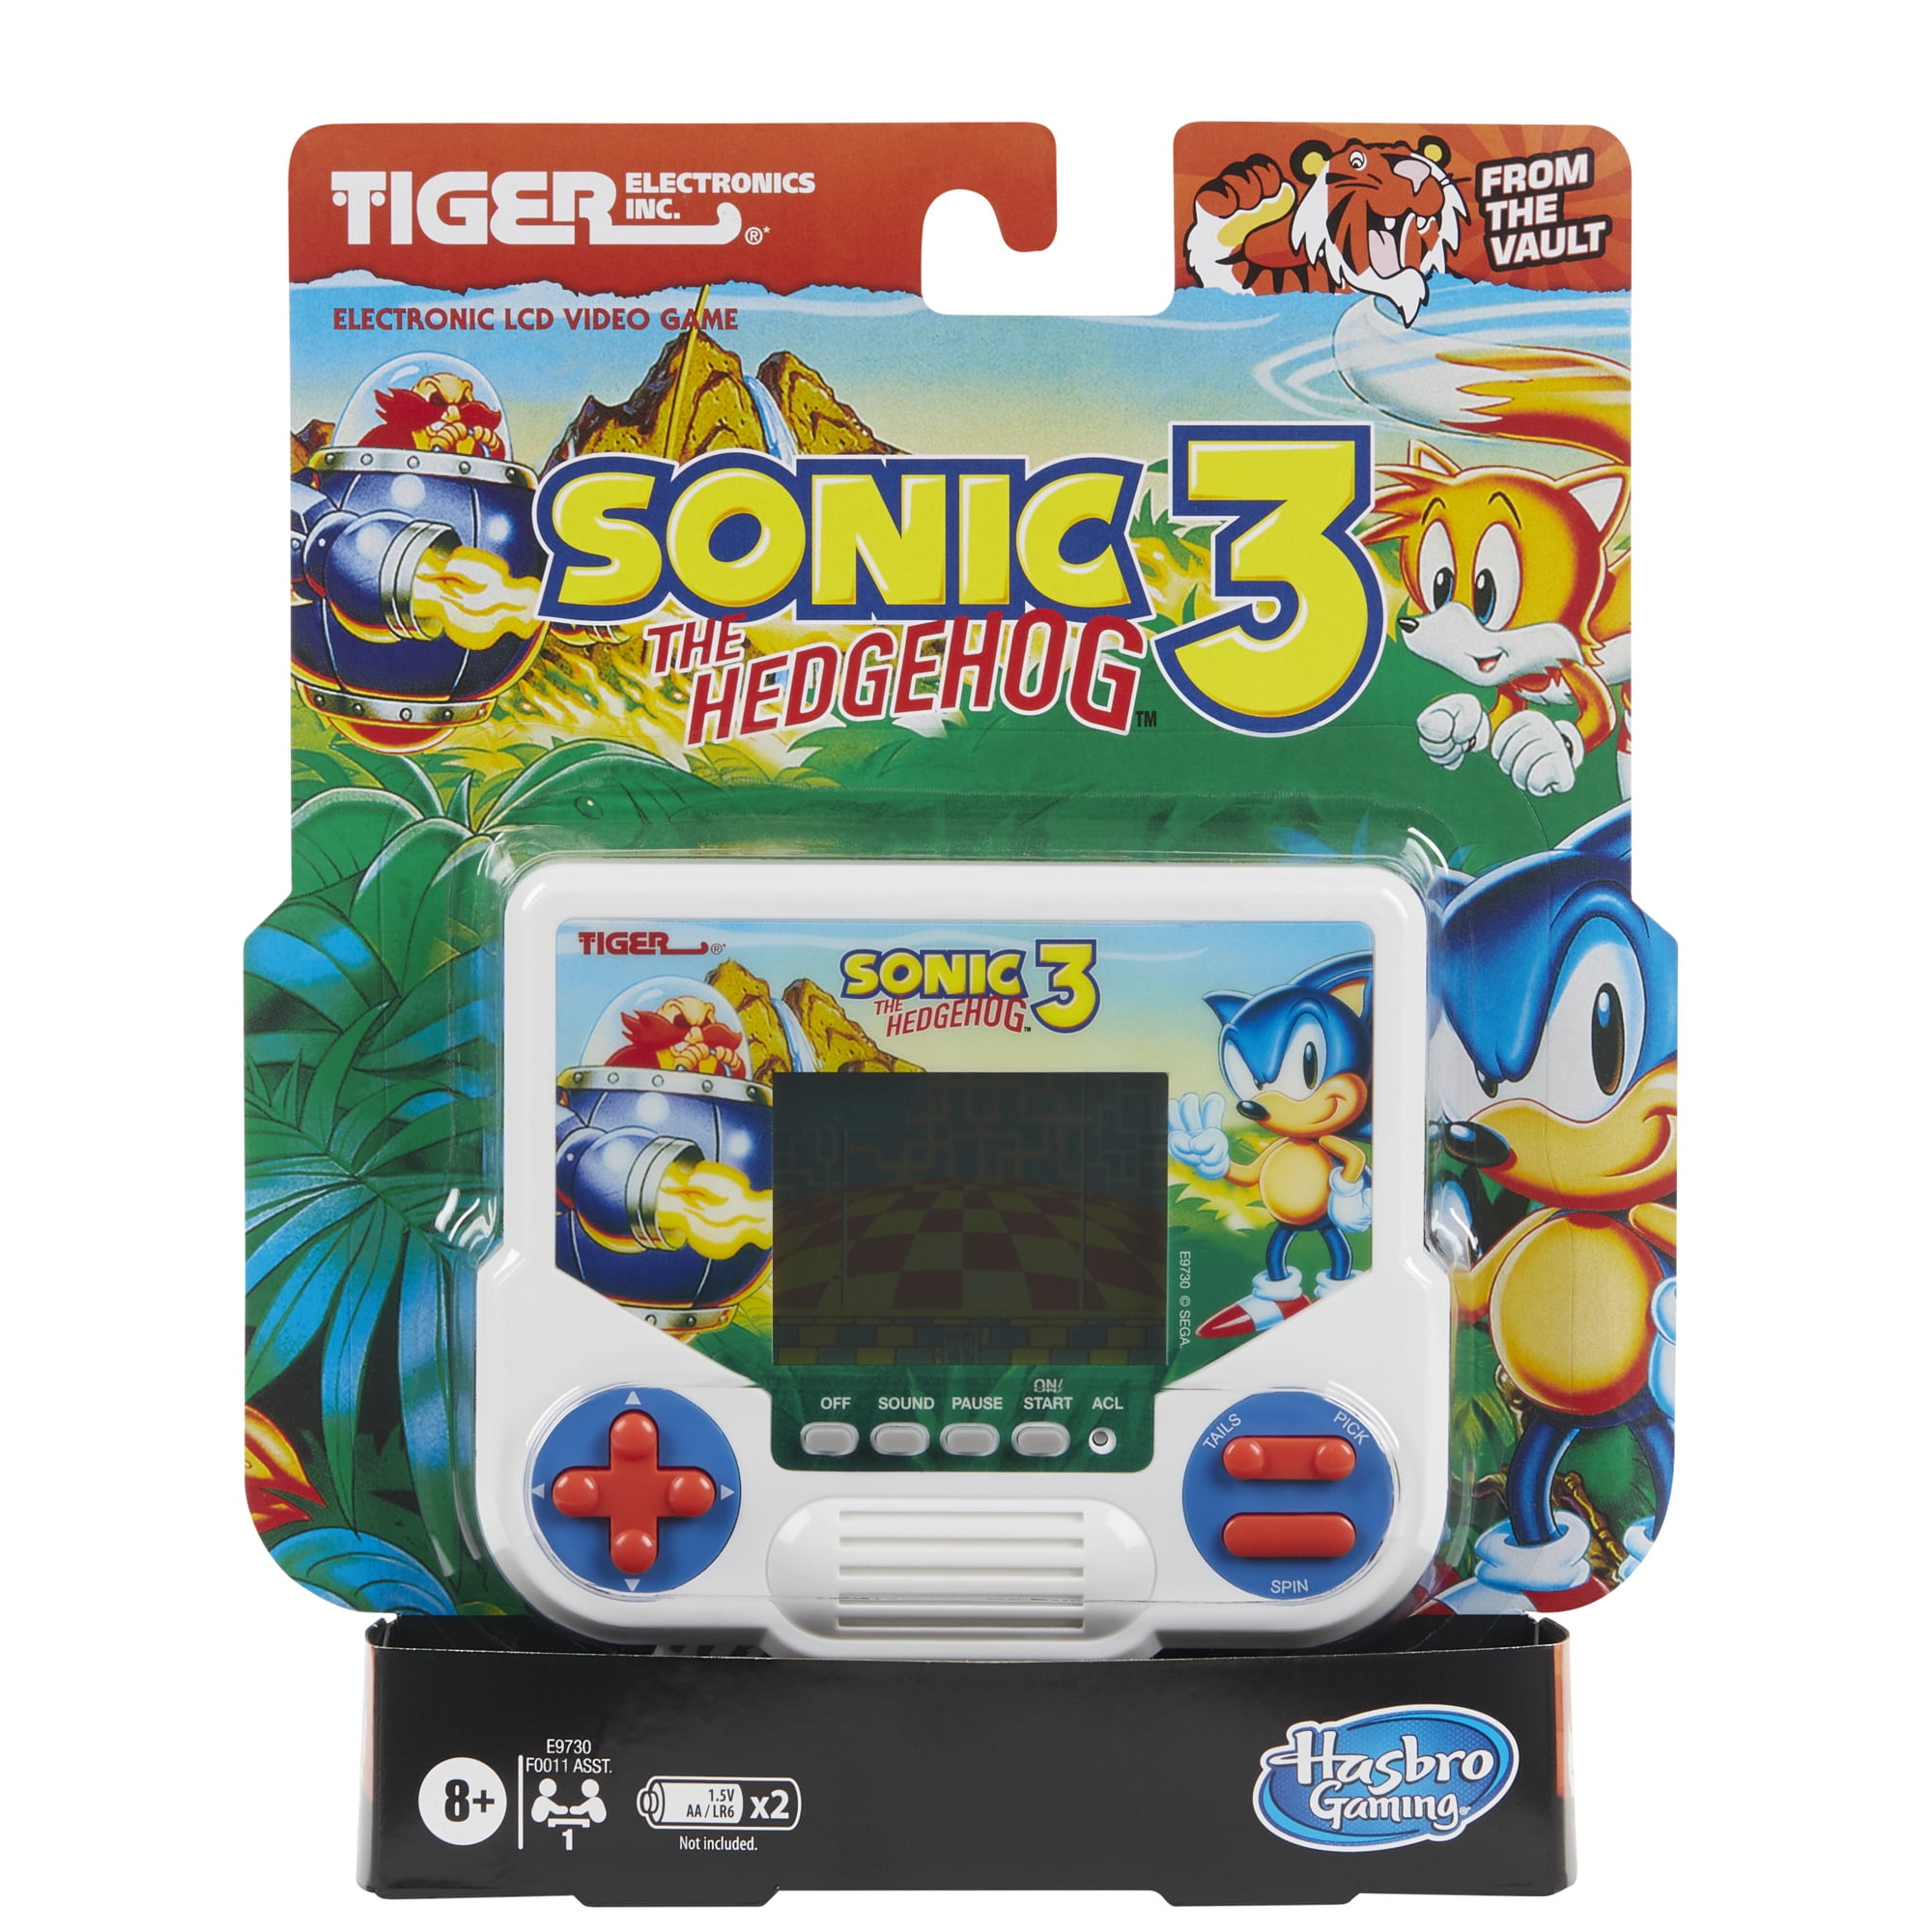 Preços baixos em Sonic the Hedgehog Sports Video Games